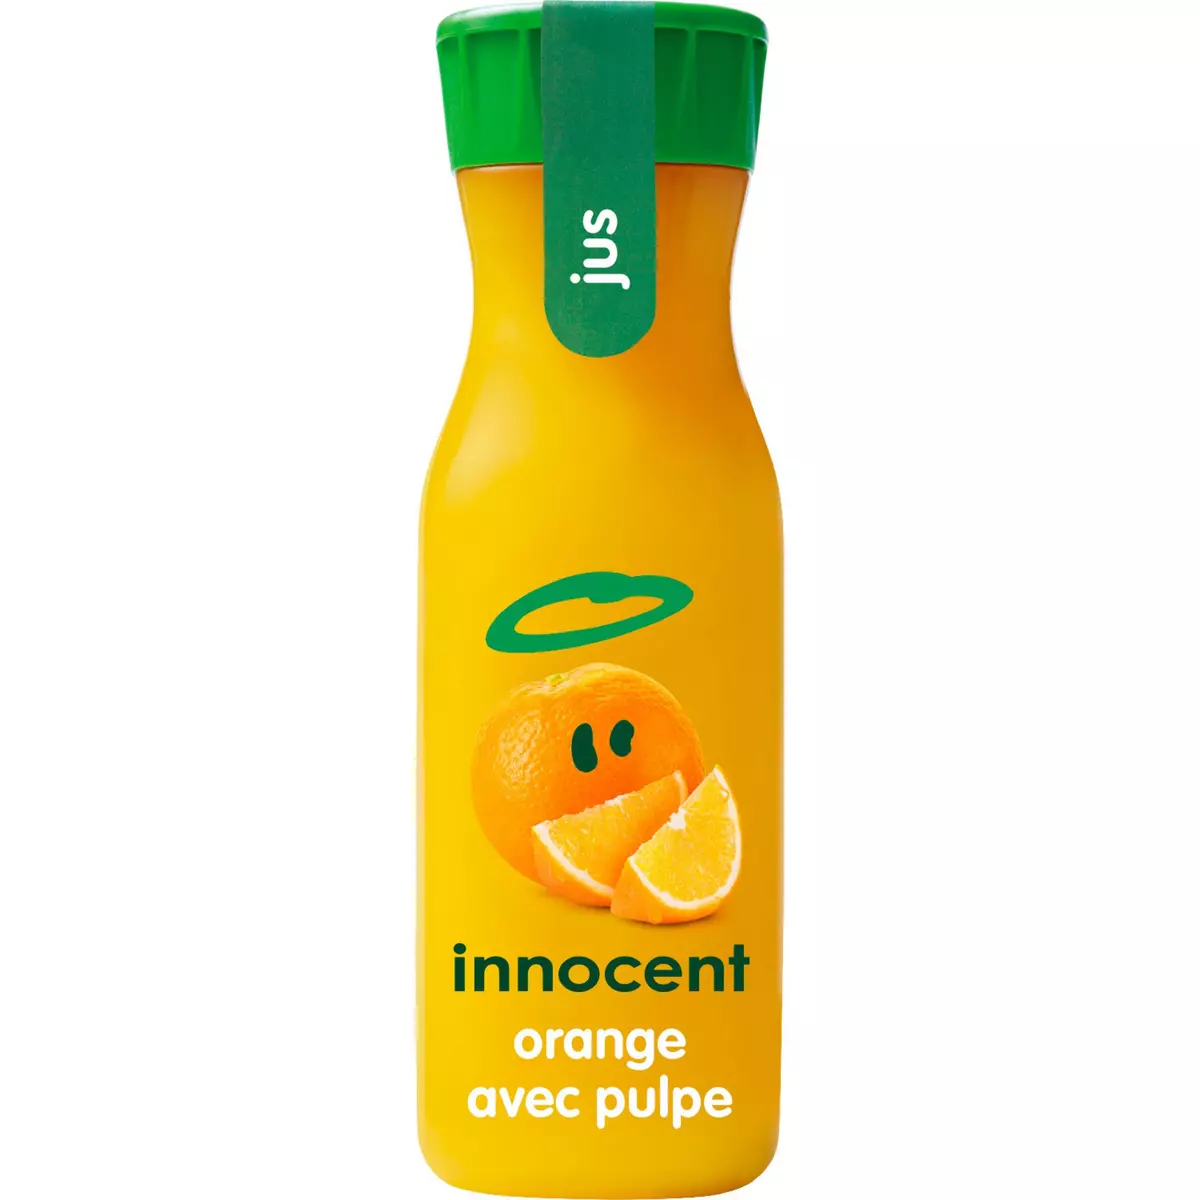 INNOCENT Pur jus d'orange avec pulpe 33cl